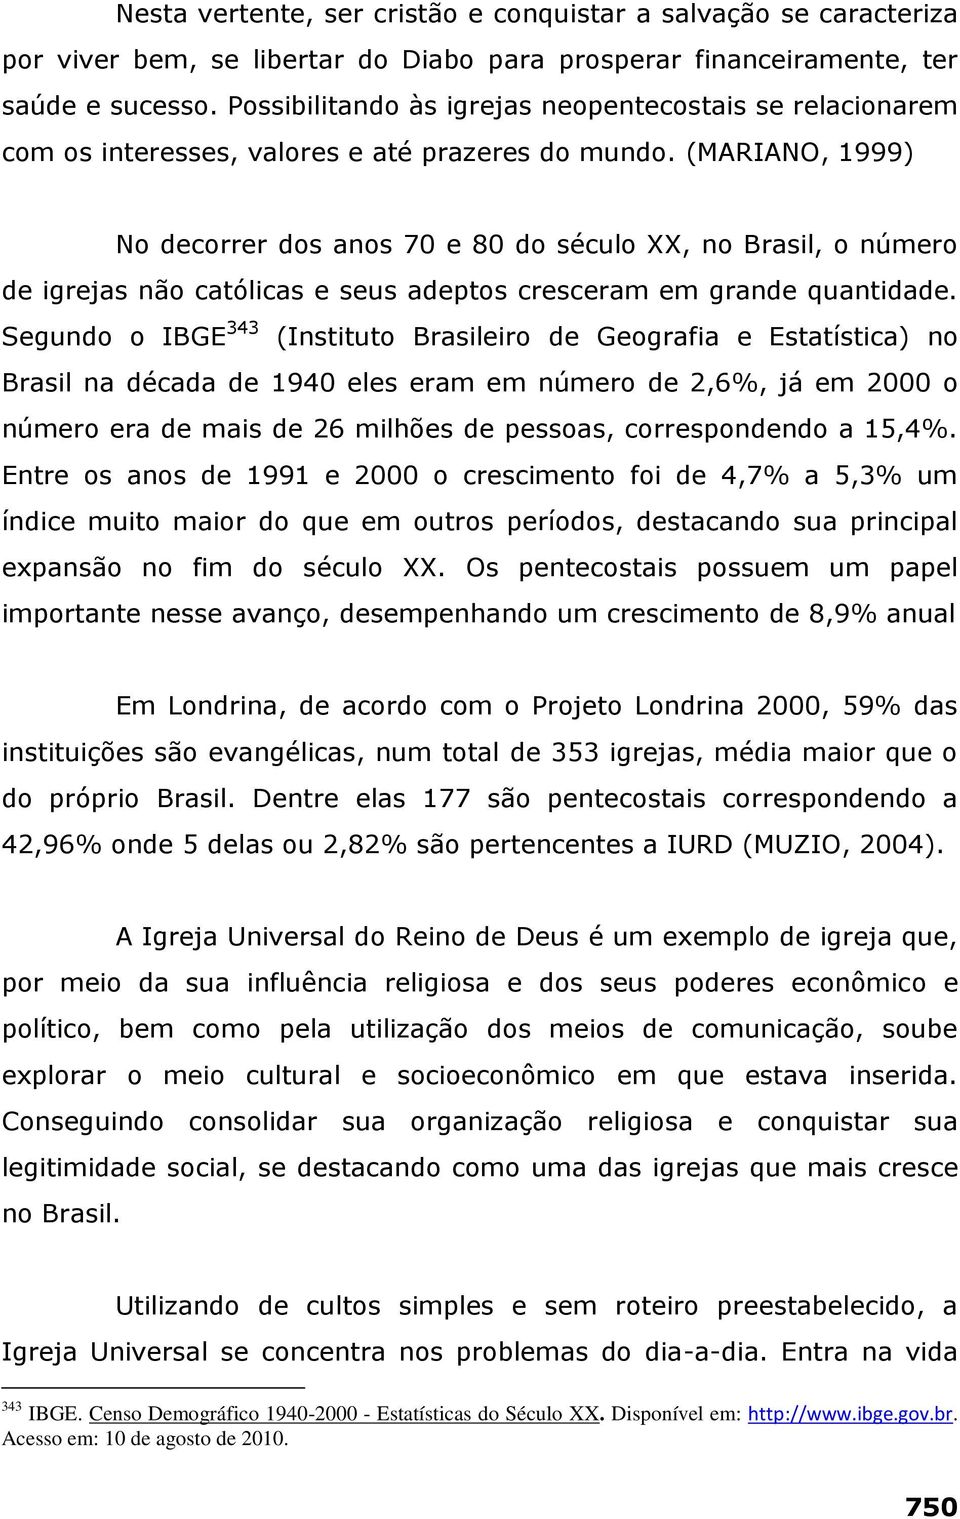 (MARIANO, 1999) No decorrer dos anos 70 e 80 do século XX, no Brasil, o número de igrejas não católicas e seus adeptos cresceram em grande quantidade.